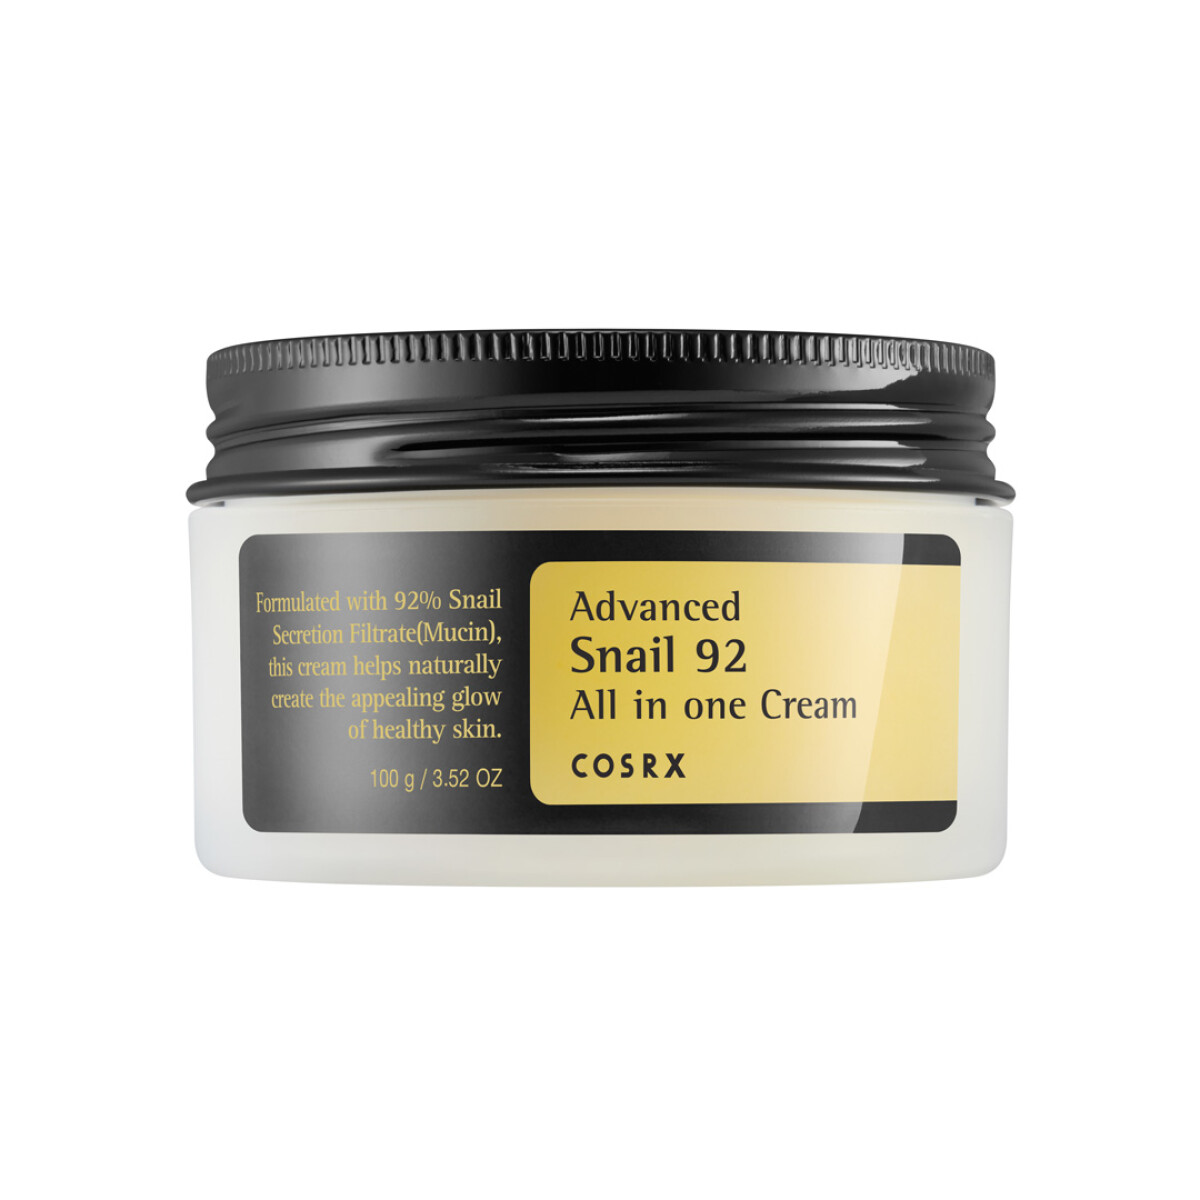 ADVANCED SNAIL 92 ALL IN ONE CREAM COSRX - Crema hidratante con un 92% de mucina de caracol (100mg) 